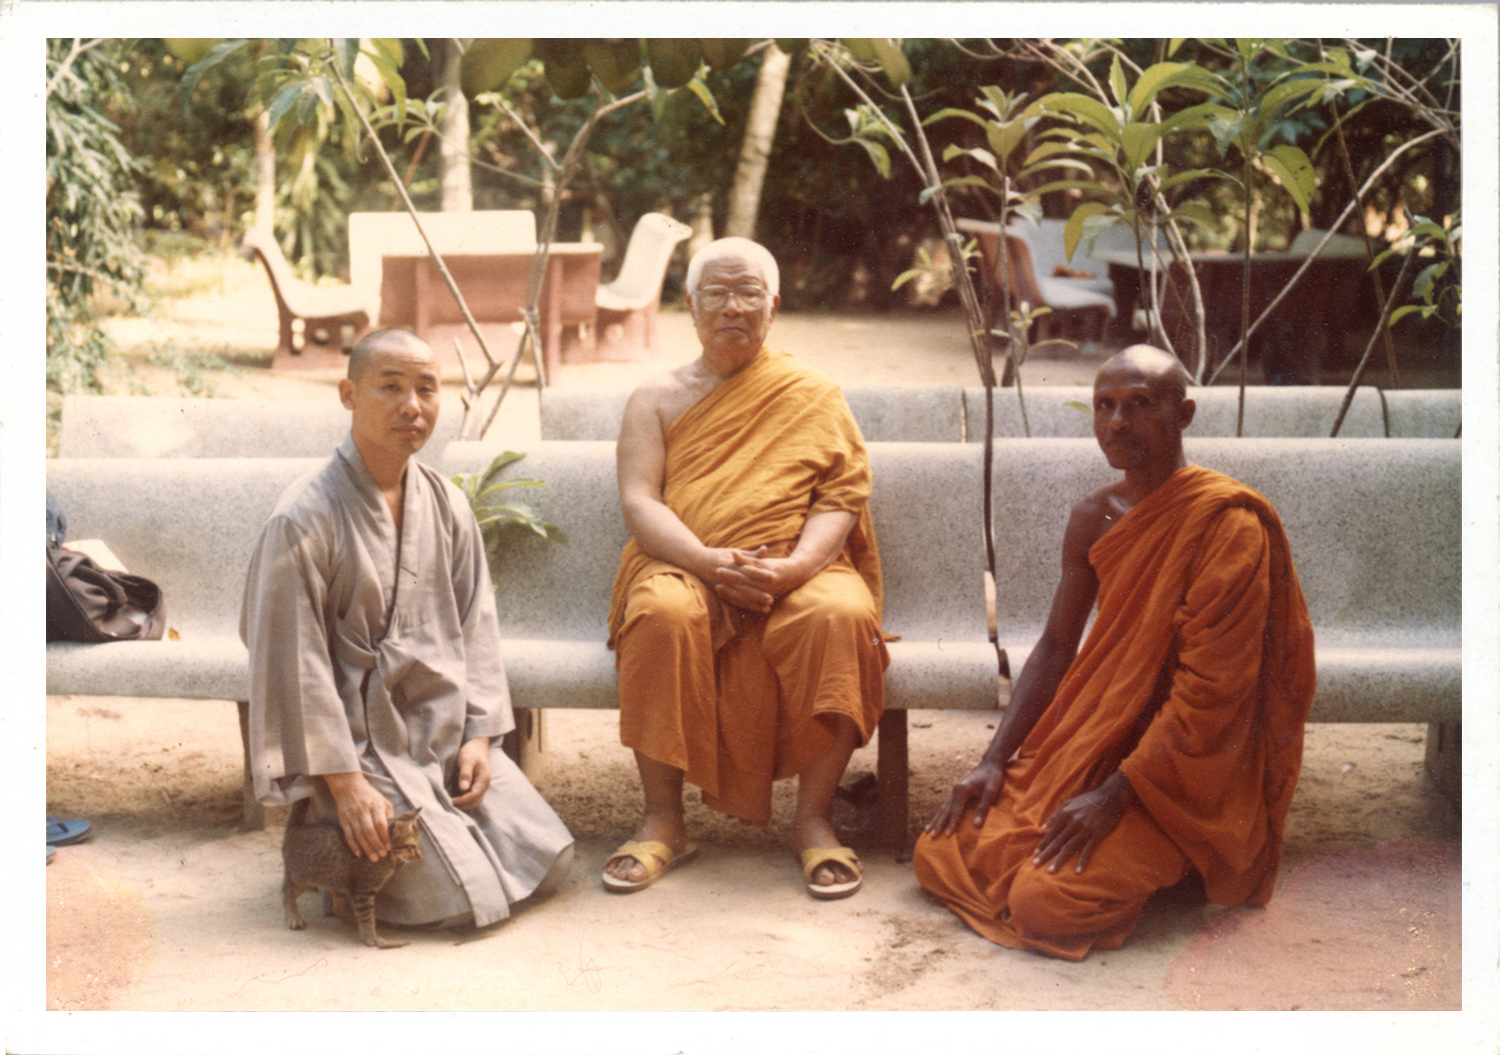 Buddhadasa indapanno archives c01229